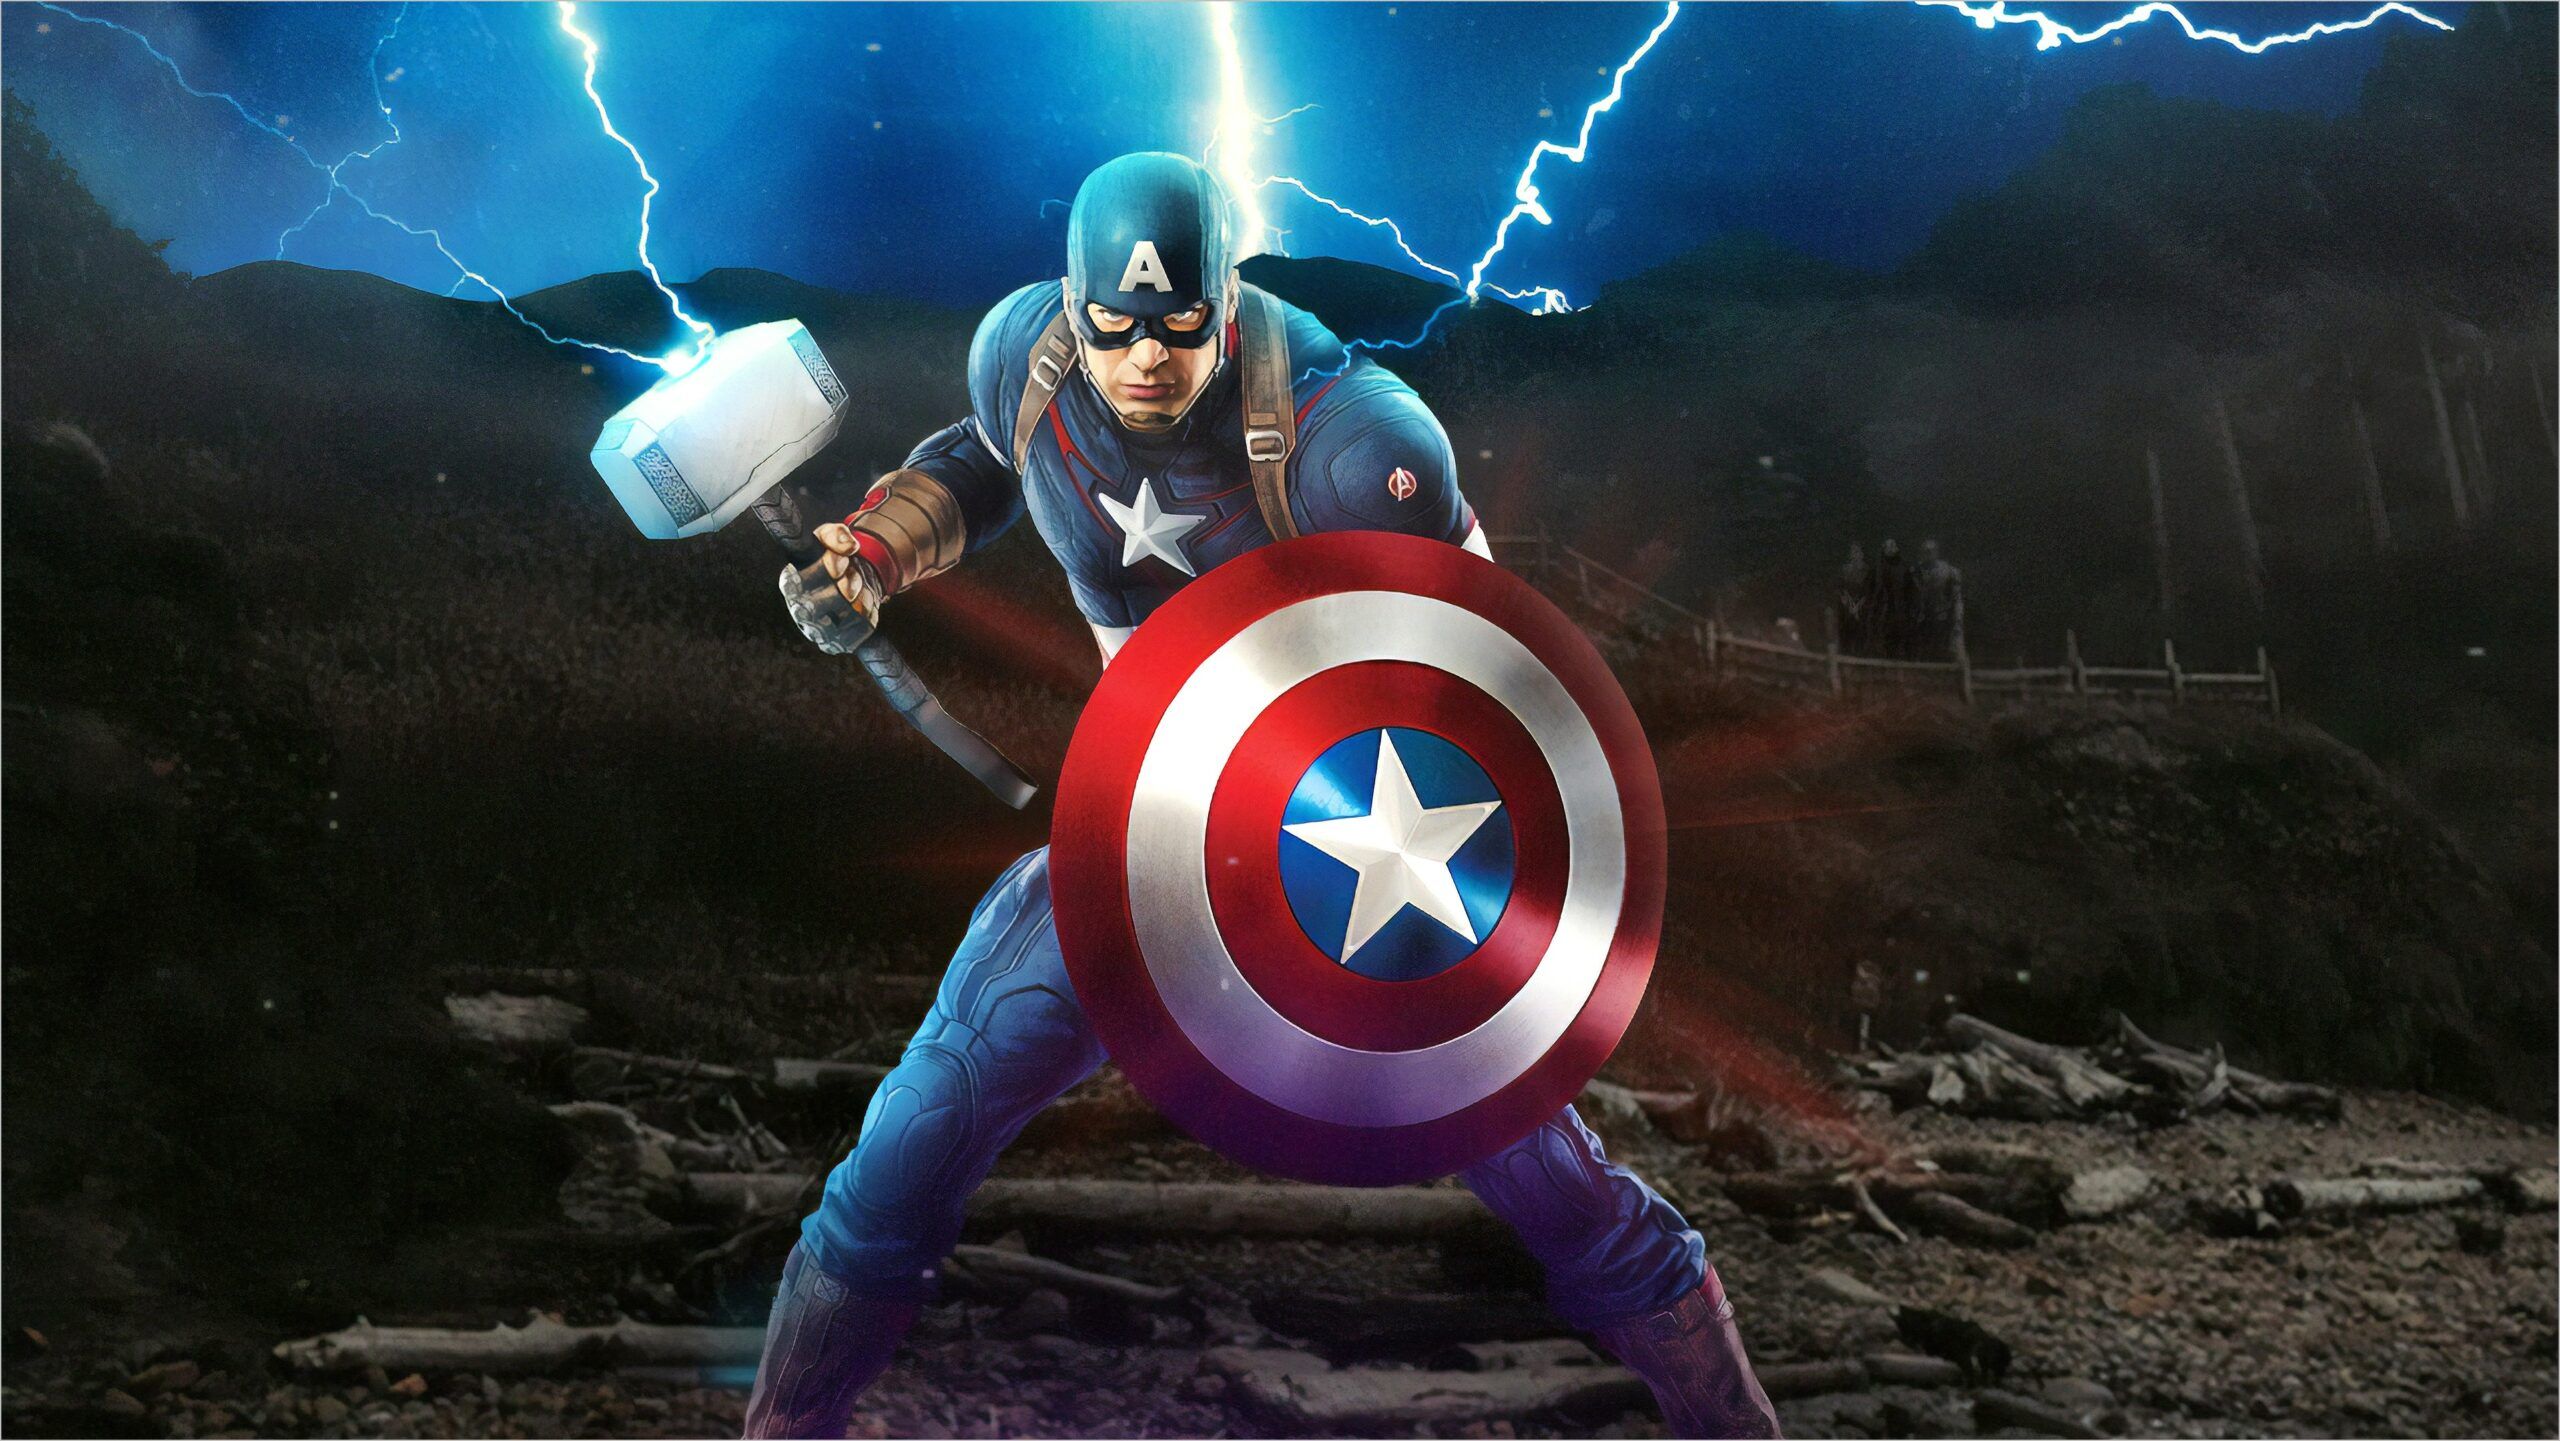 Captain America Endgame 4k Wallpaper. Captain america, Avengers, Captain america image